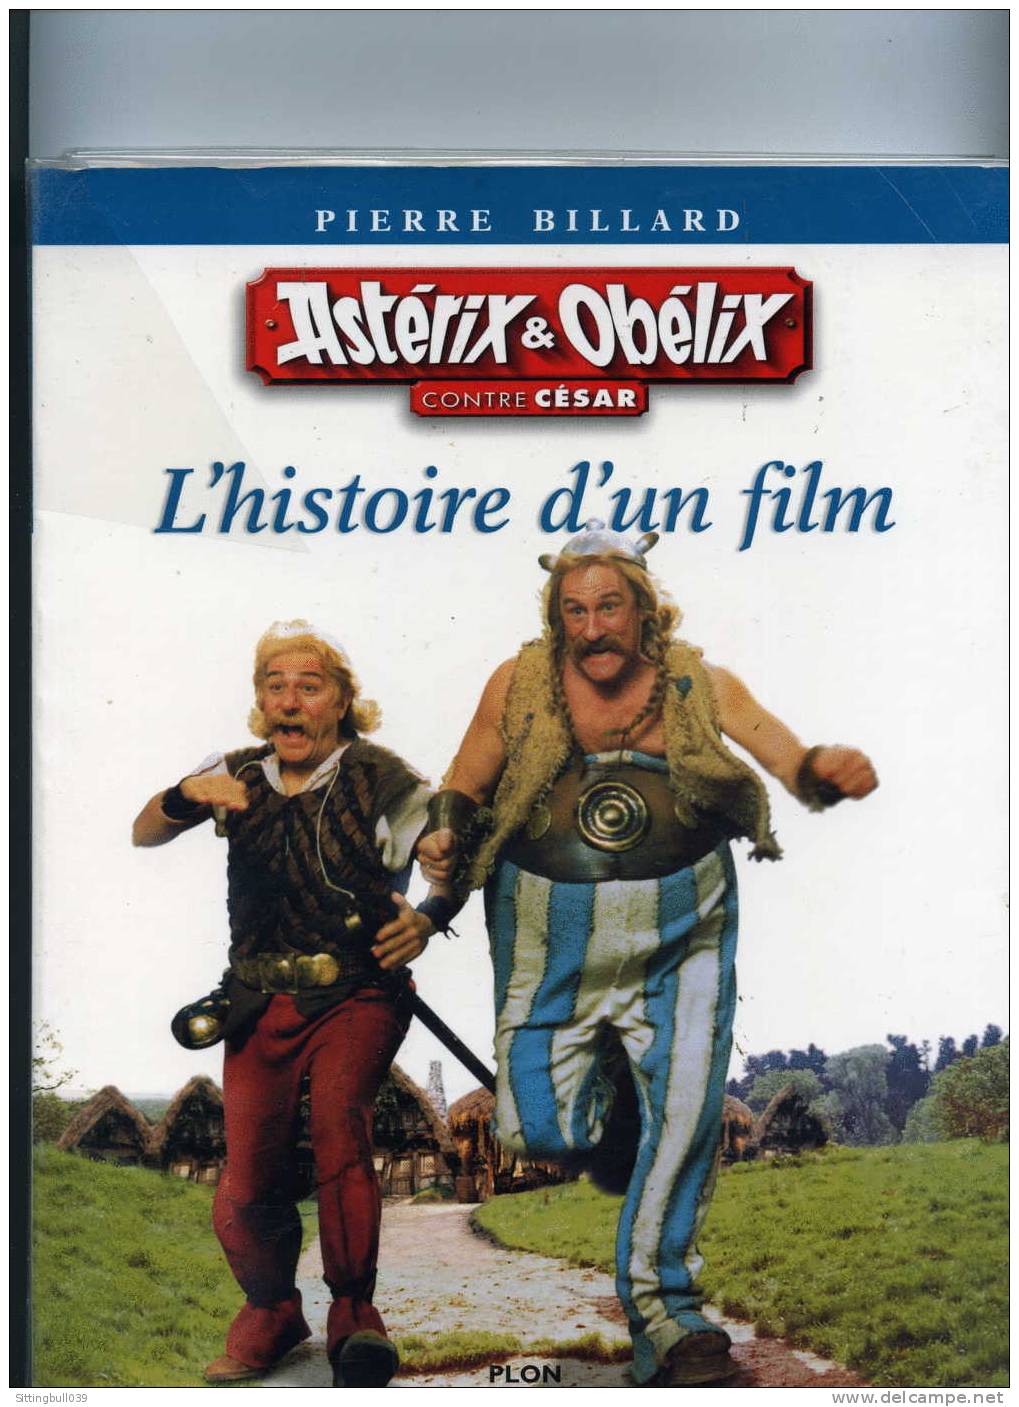 ASTERIX & OBELIX CONTRE CESAR, L'HISTOIRE D'UN FILM PAR PIERRE BILLARD. ED PLON 1999. POUR LES INCONDITIONNELS D'ASTERIX - Astérix